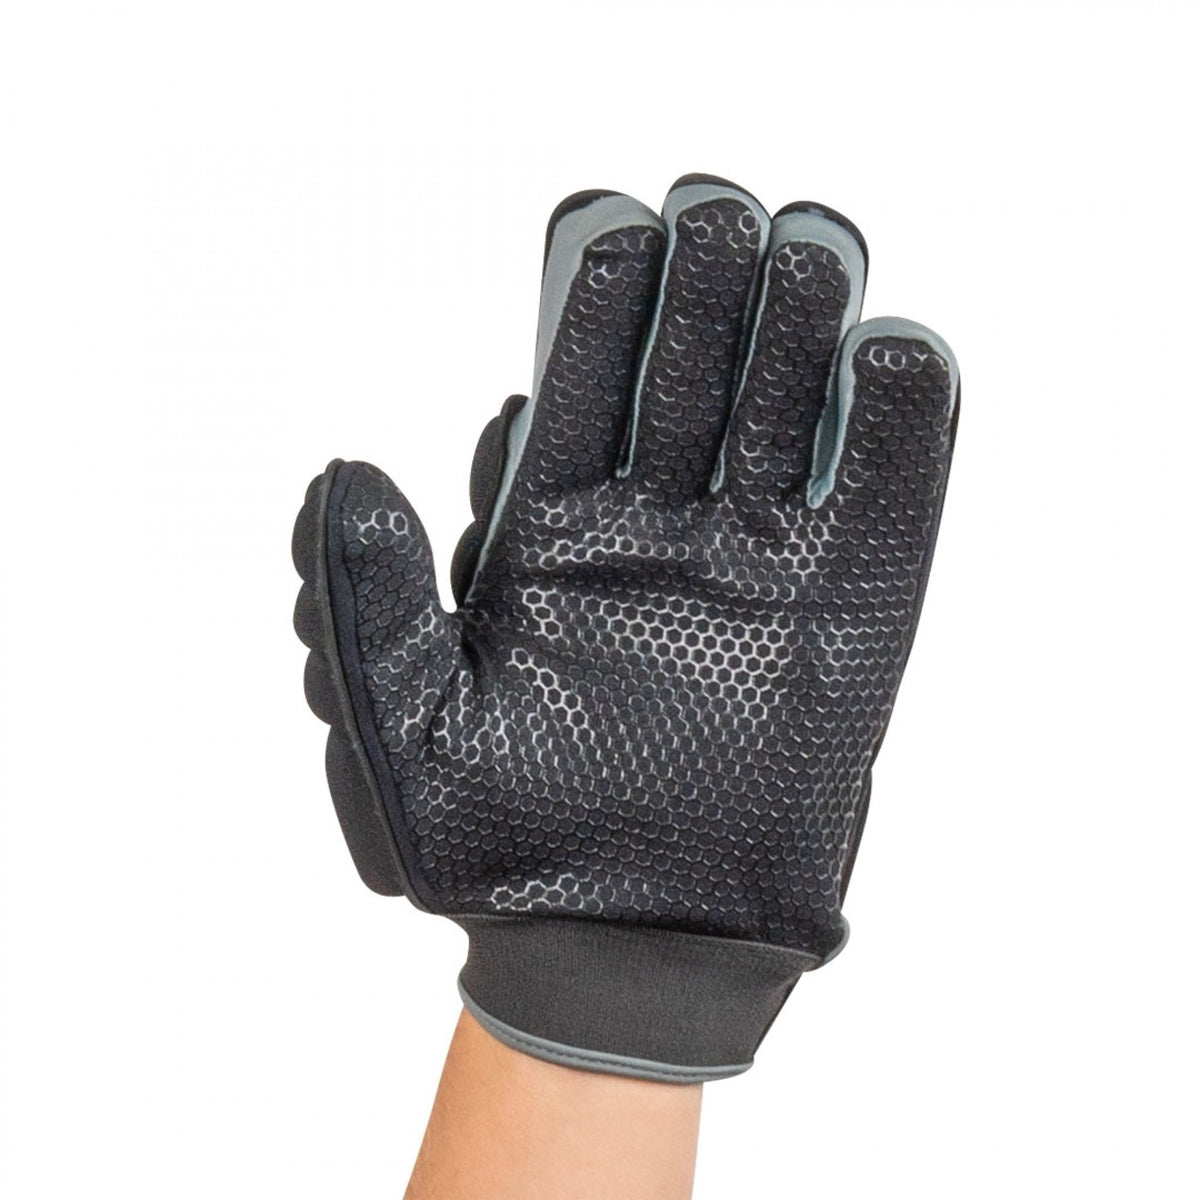 BM Z90 Glove LH